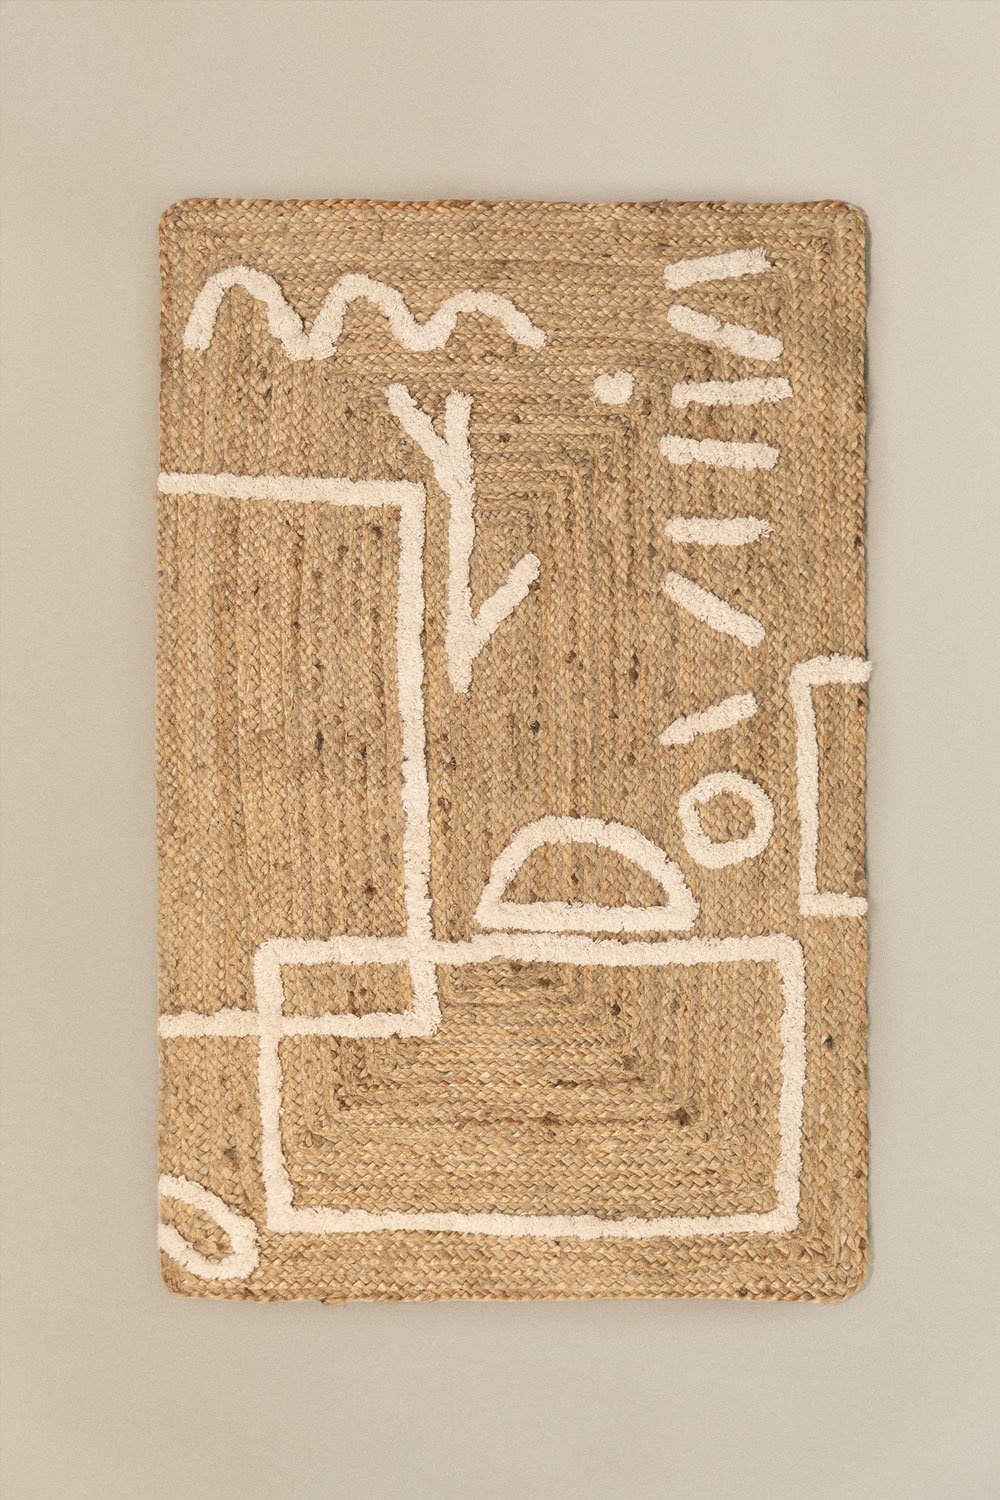 Tappeto in juta e cotone (112x71 cm) Dudle, immagine della galleria 1